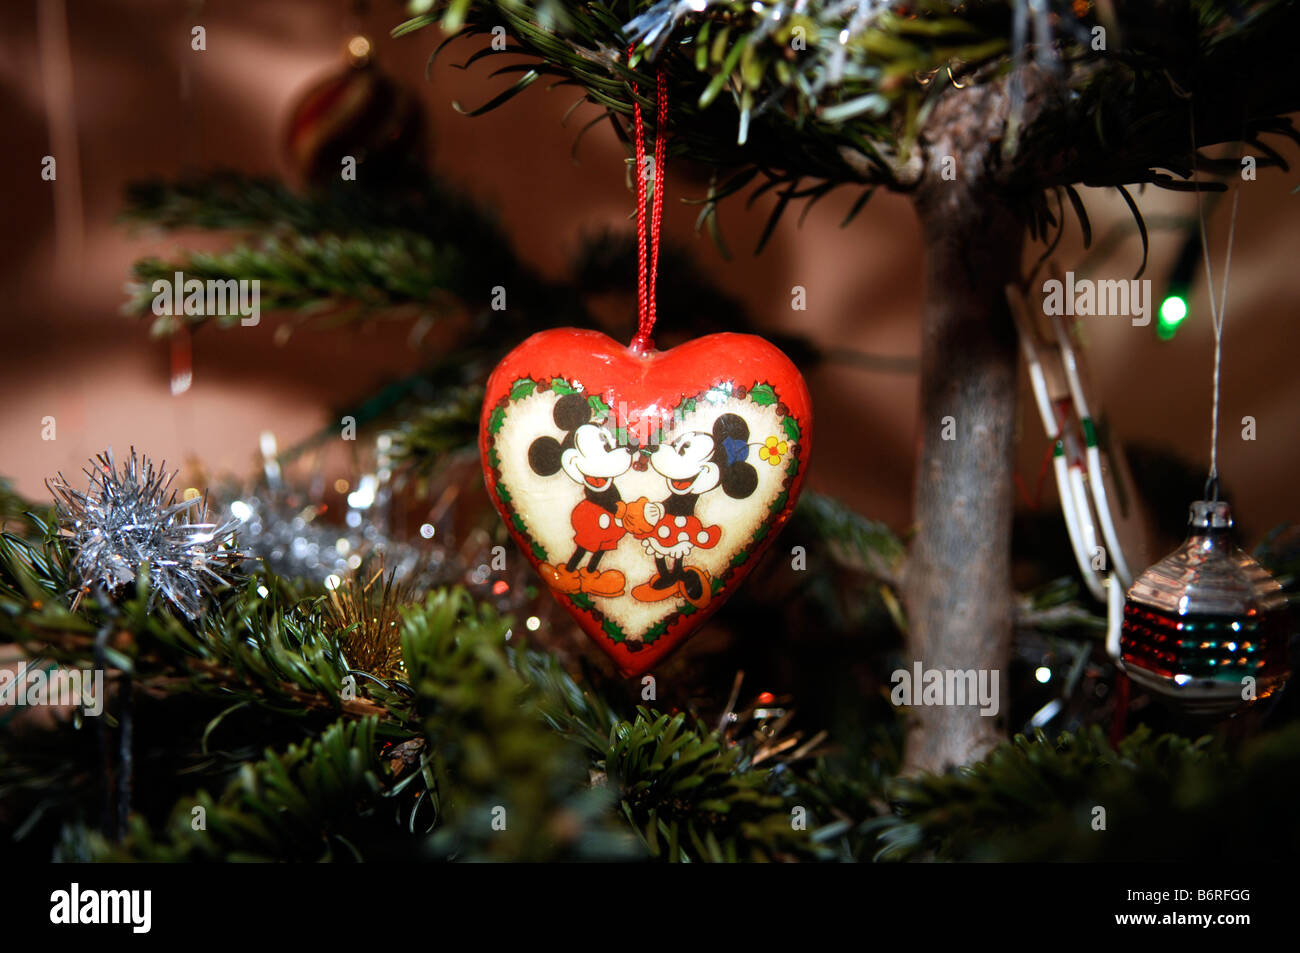 Immagini Natalizie Topolino E Minnie.Topolino E Minnie Mouse Decorazione Per Albero Di Natale Foto Stock Alamy